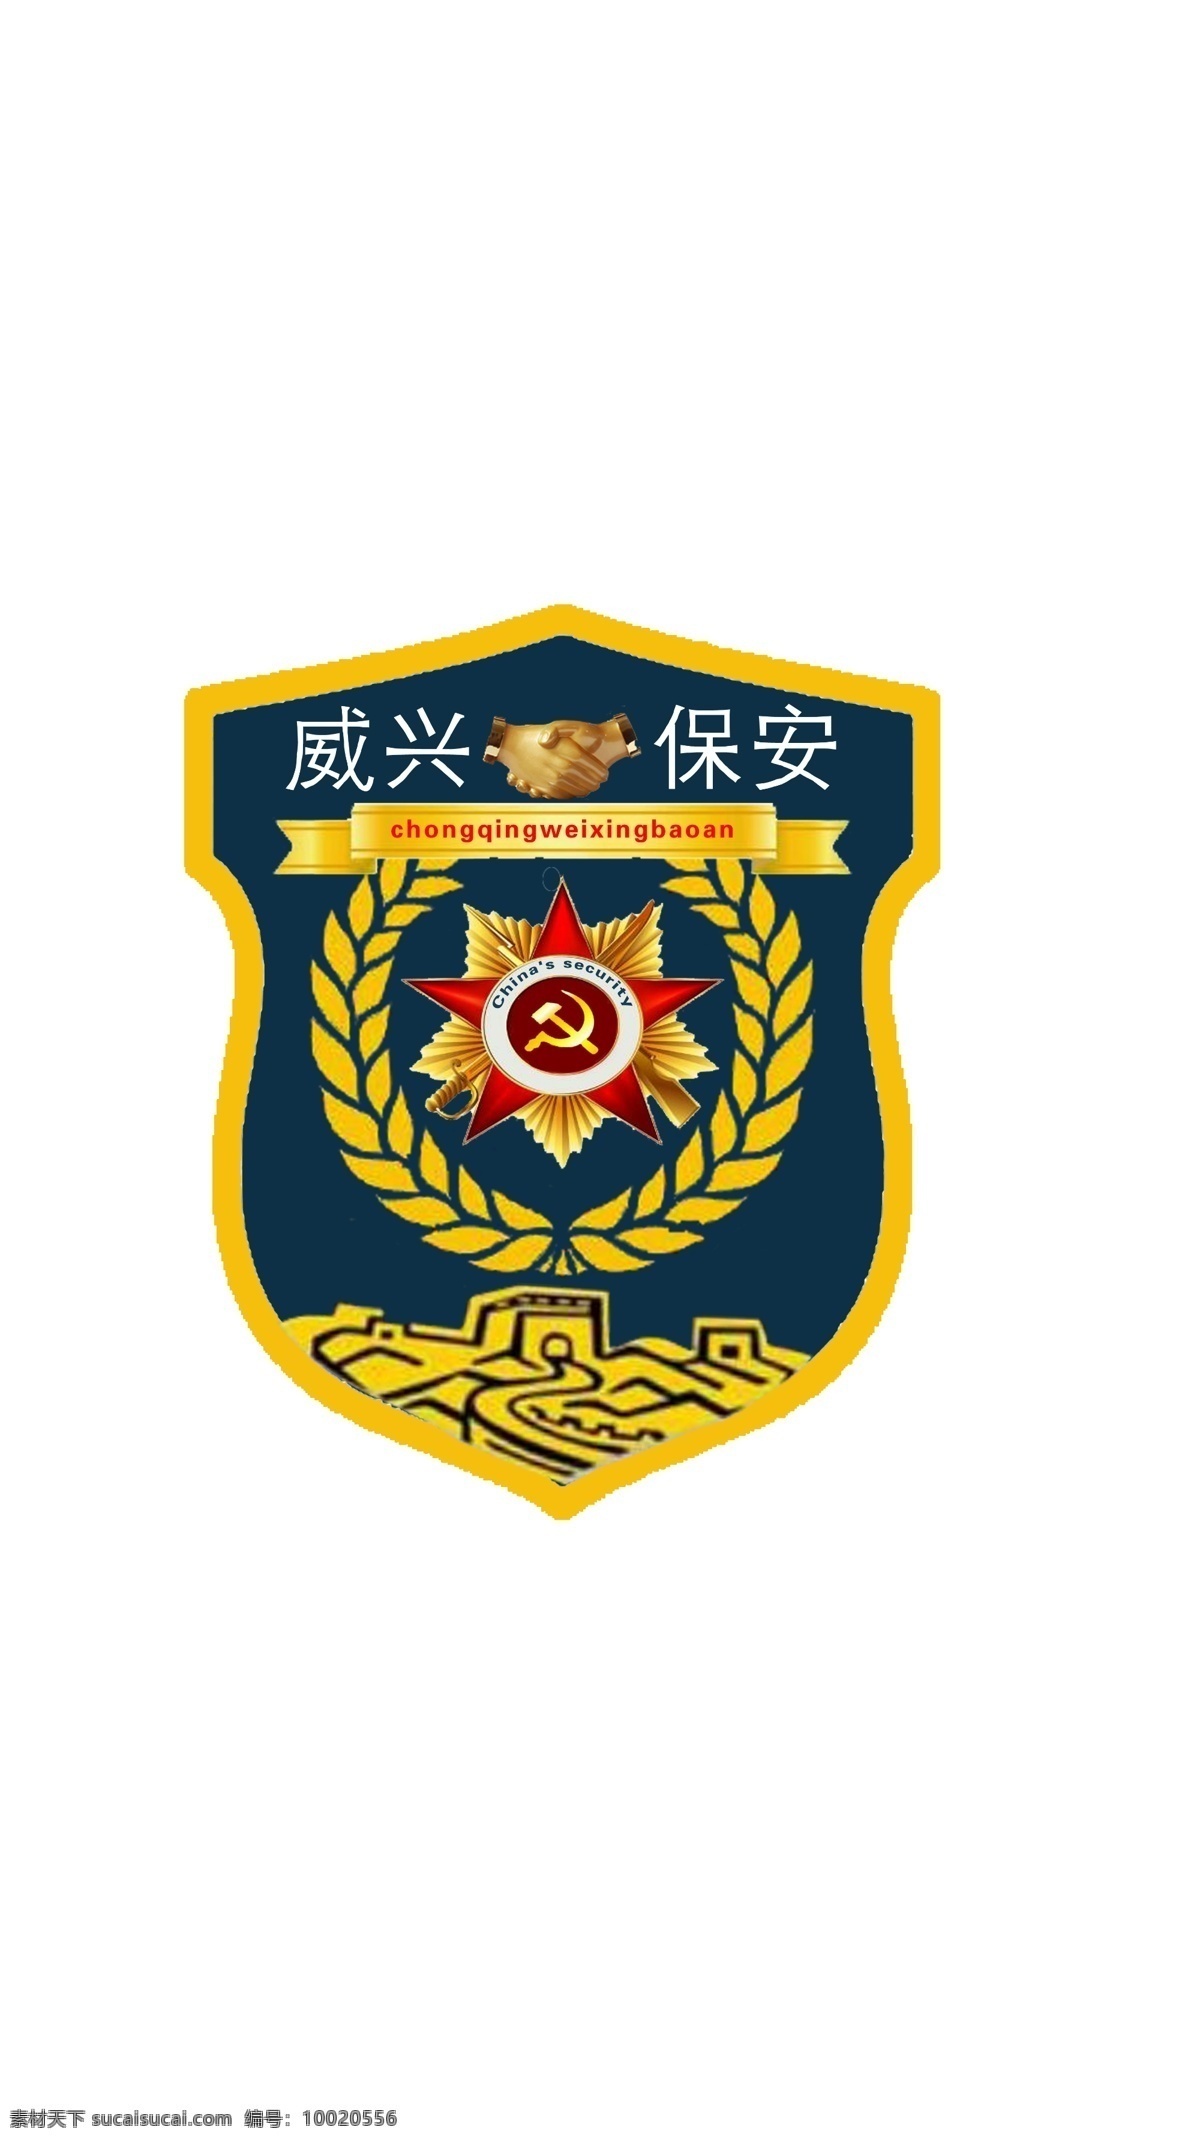 保安标志 保安 logo 标志 威兴 保安臂章 徽章